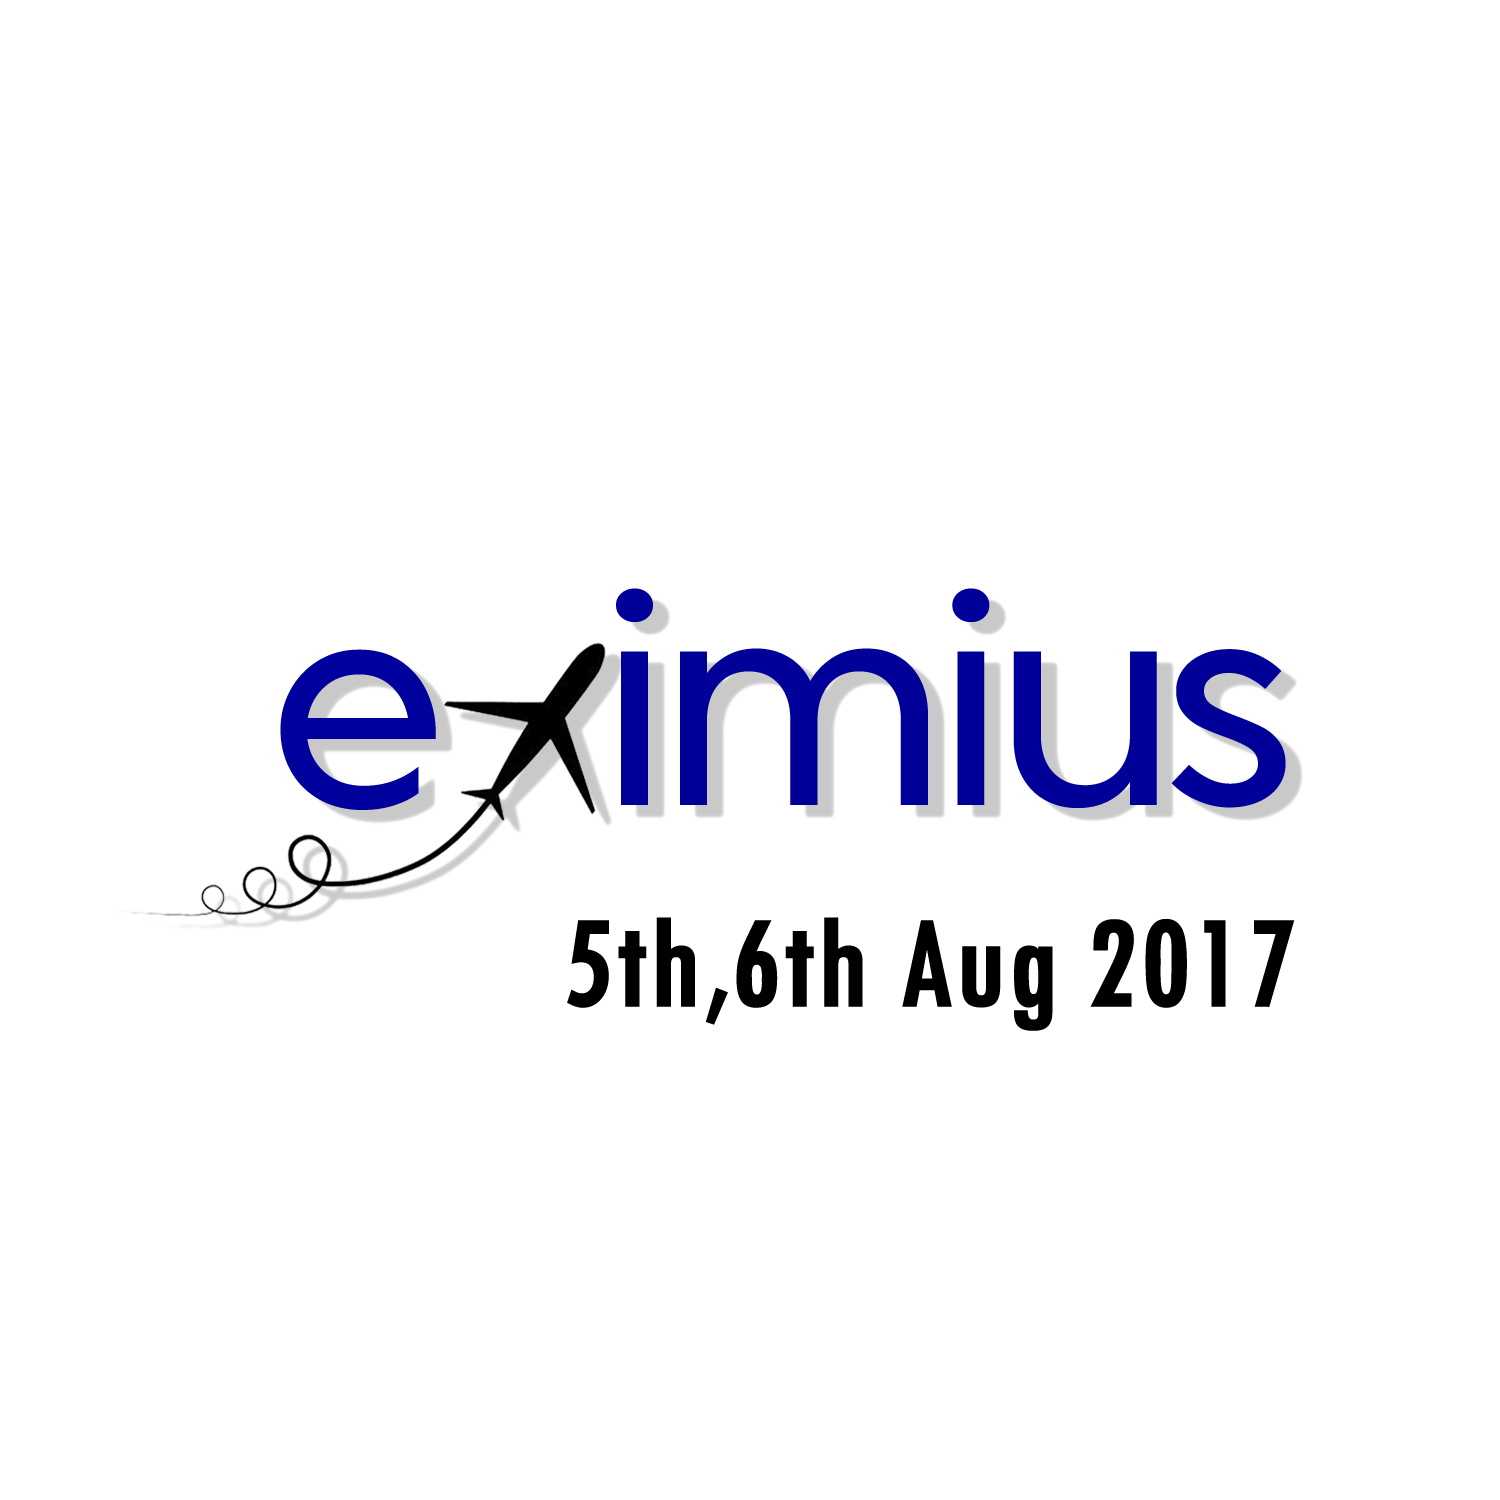 IIMB EXIMIUS 2017